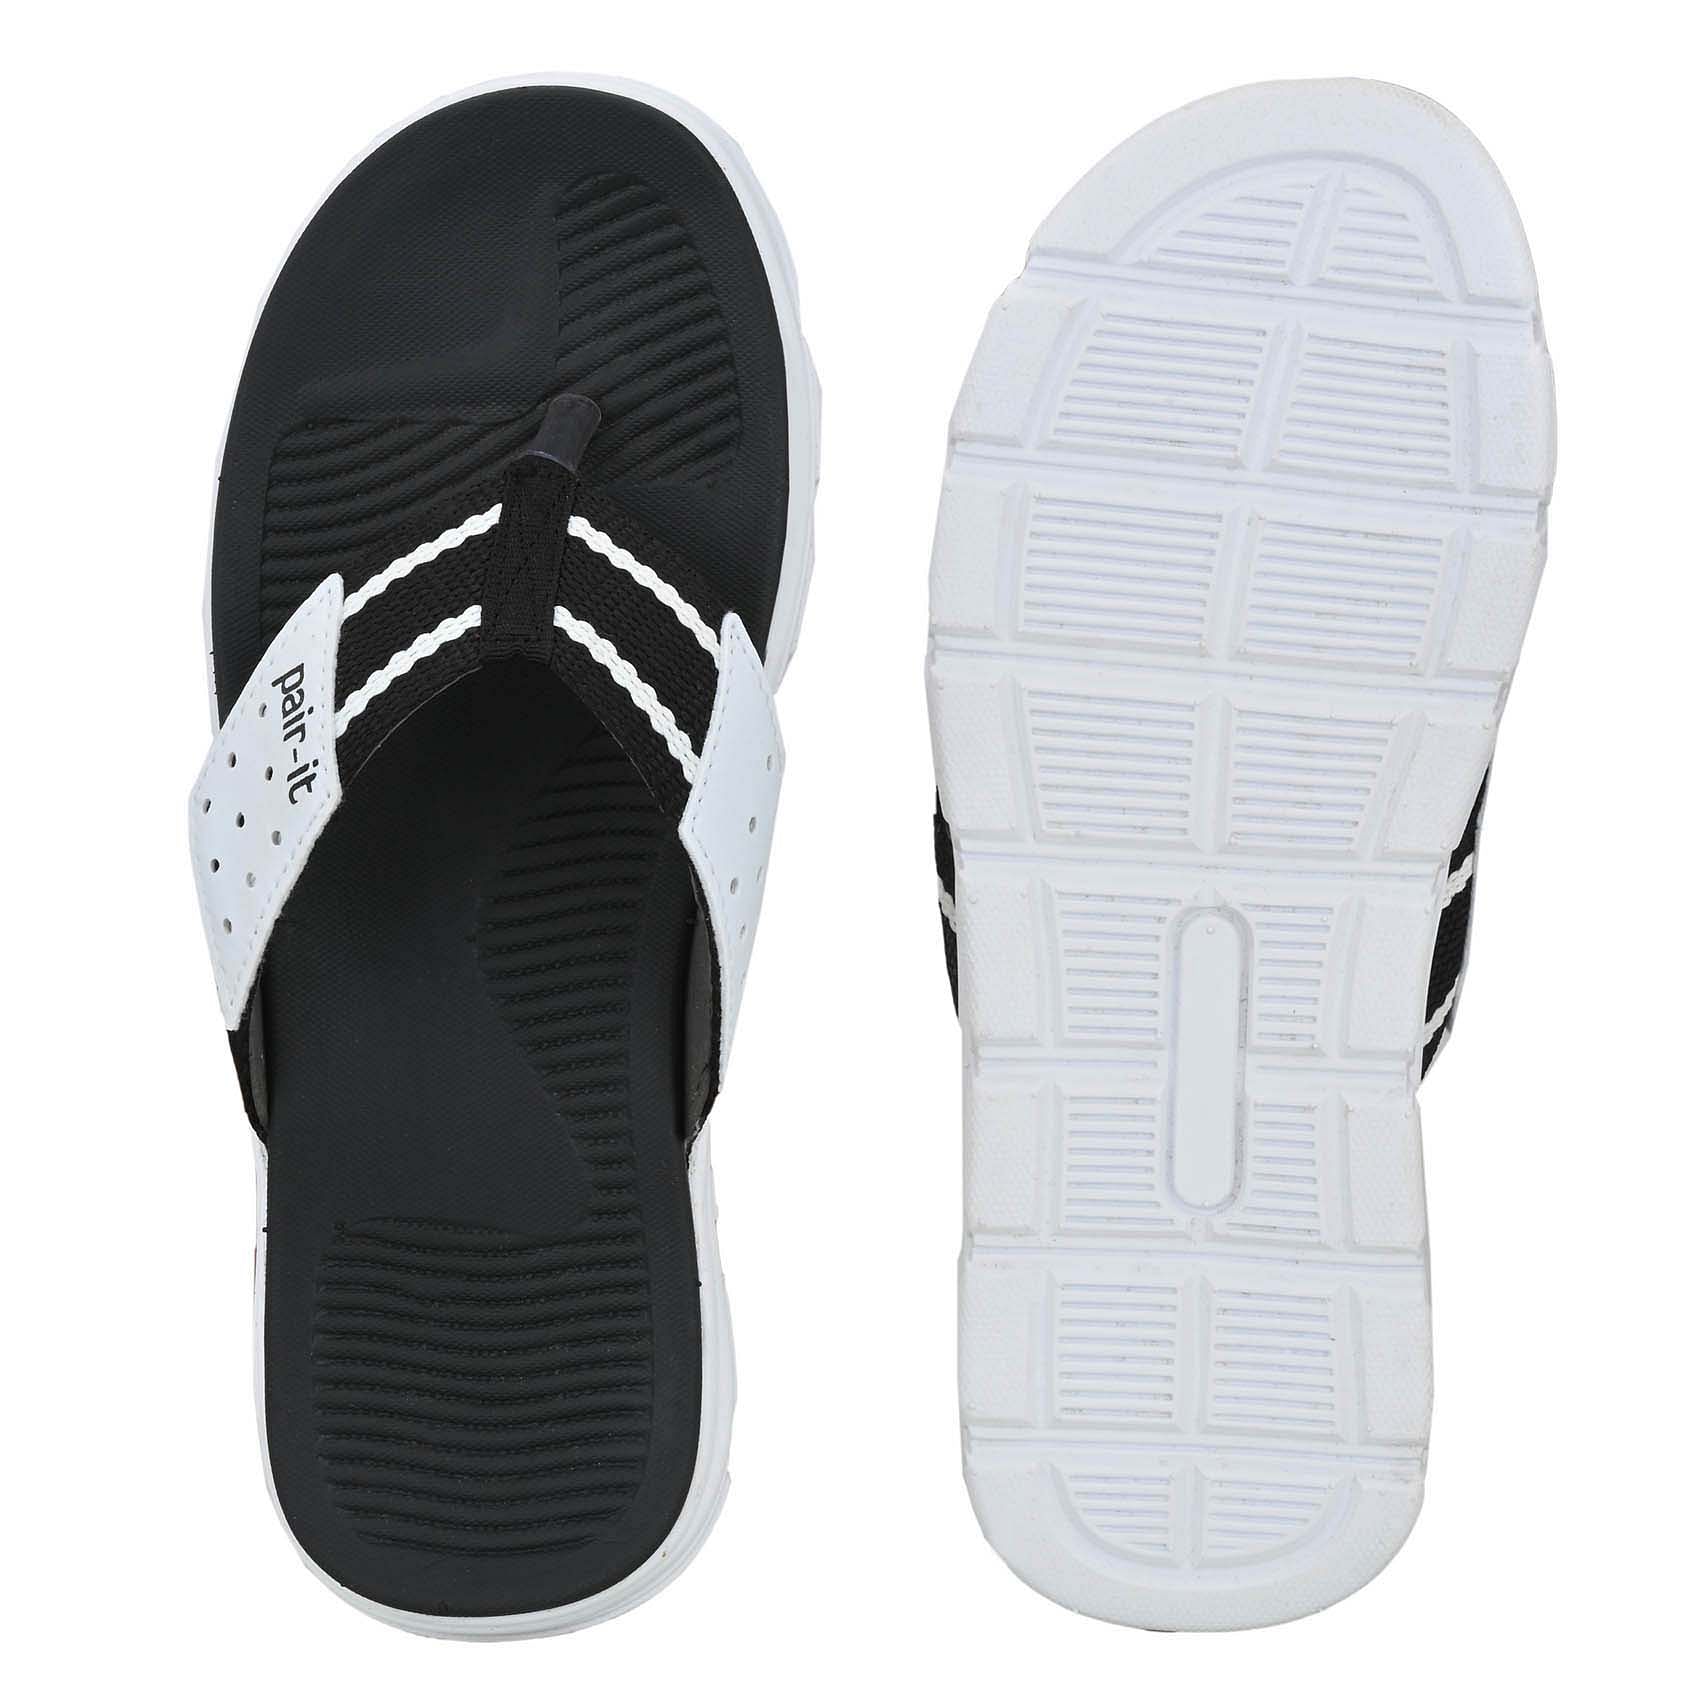 Pair-it Men's Rubberised EVA Slippers-LZ-Slippers118-Black/White